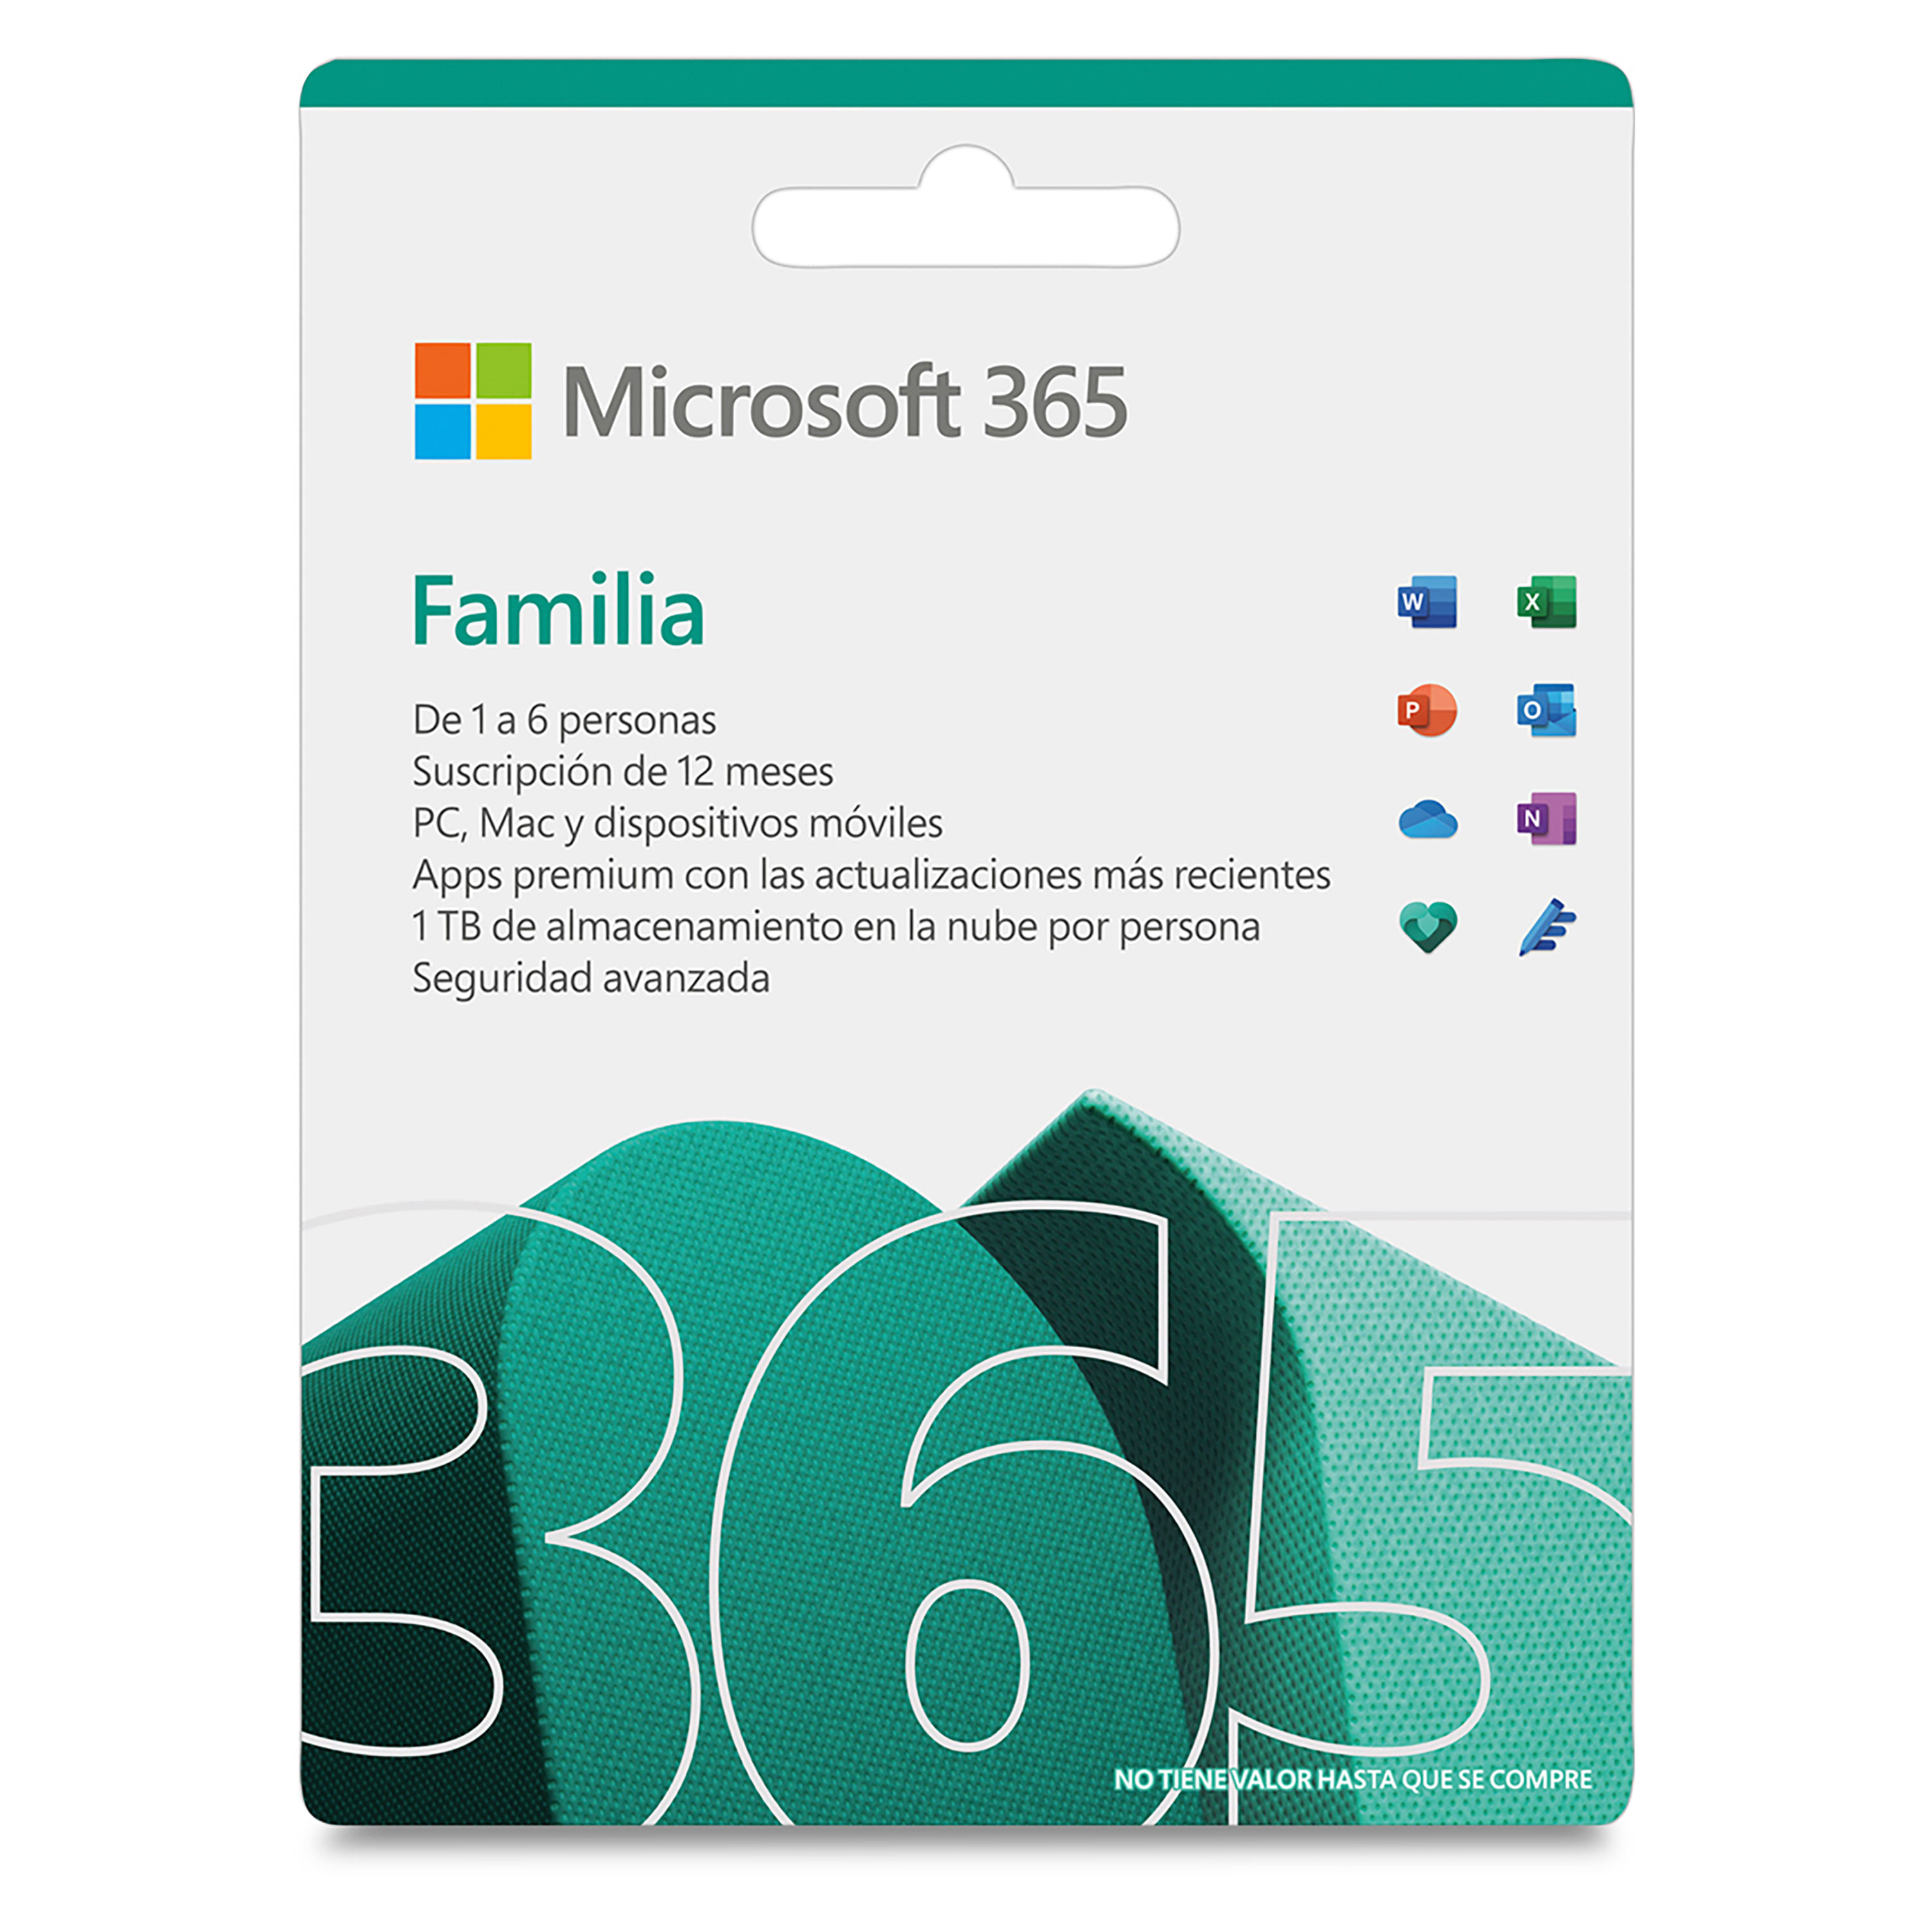 Comprar Office Microsoft 365 Familia | Walmart Costa Rica